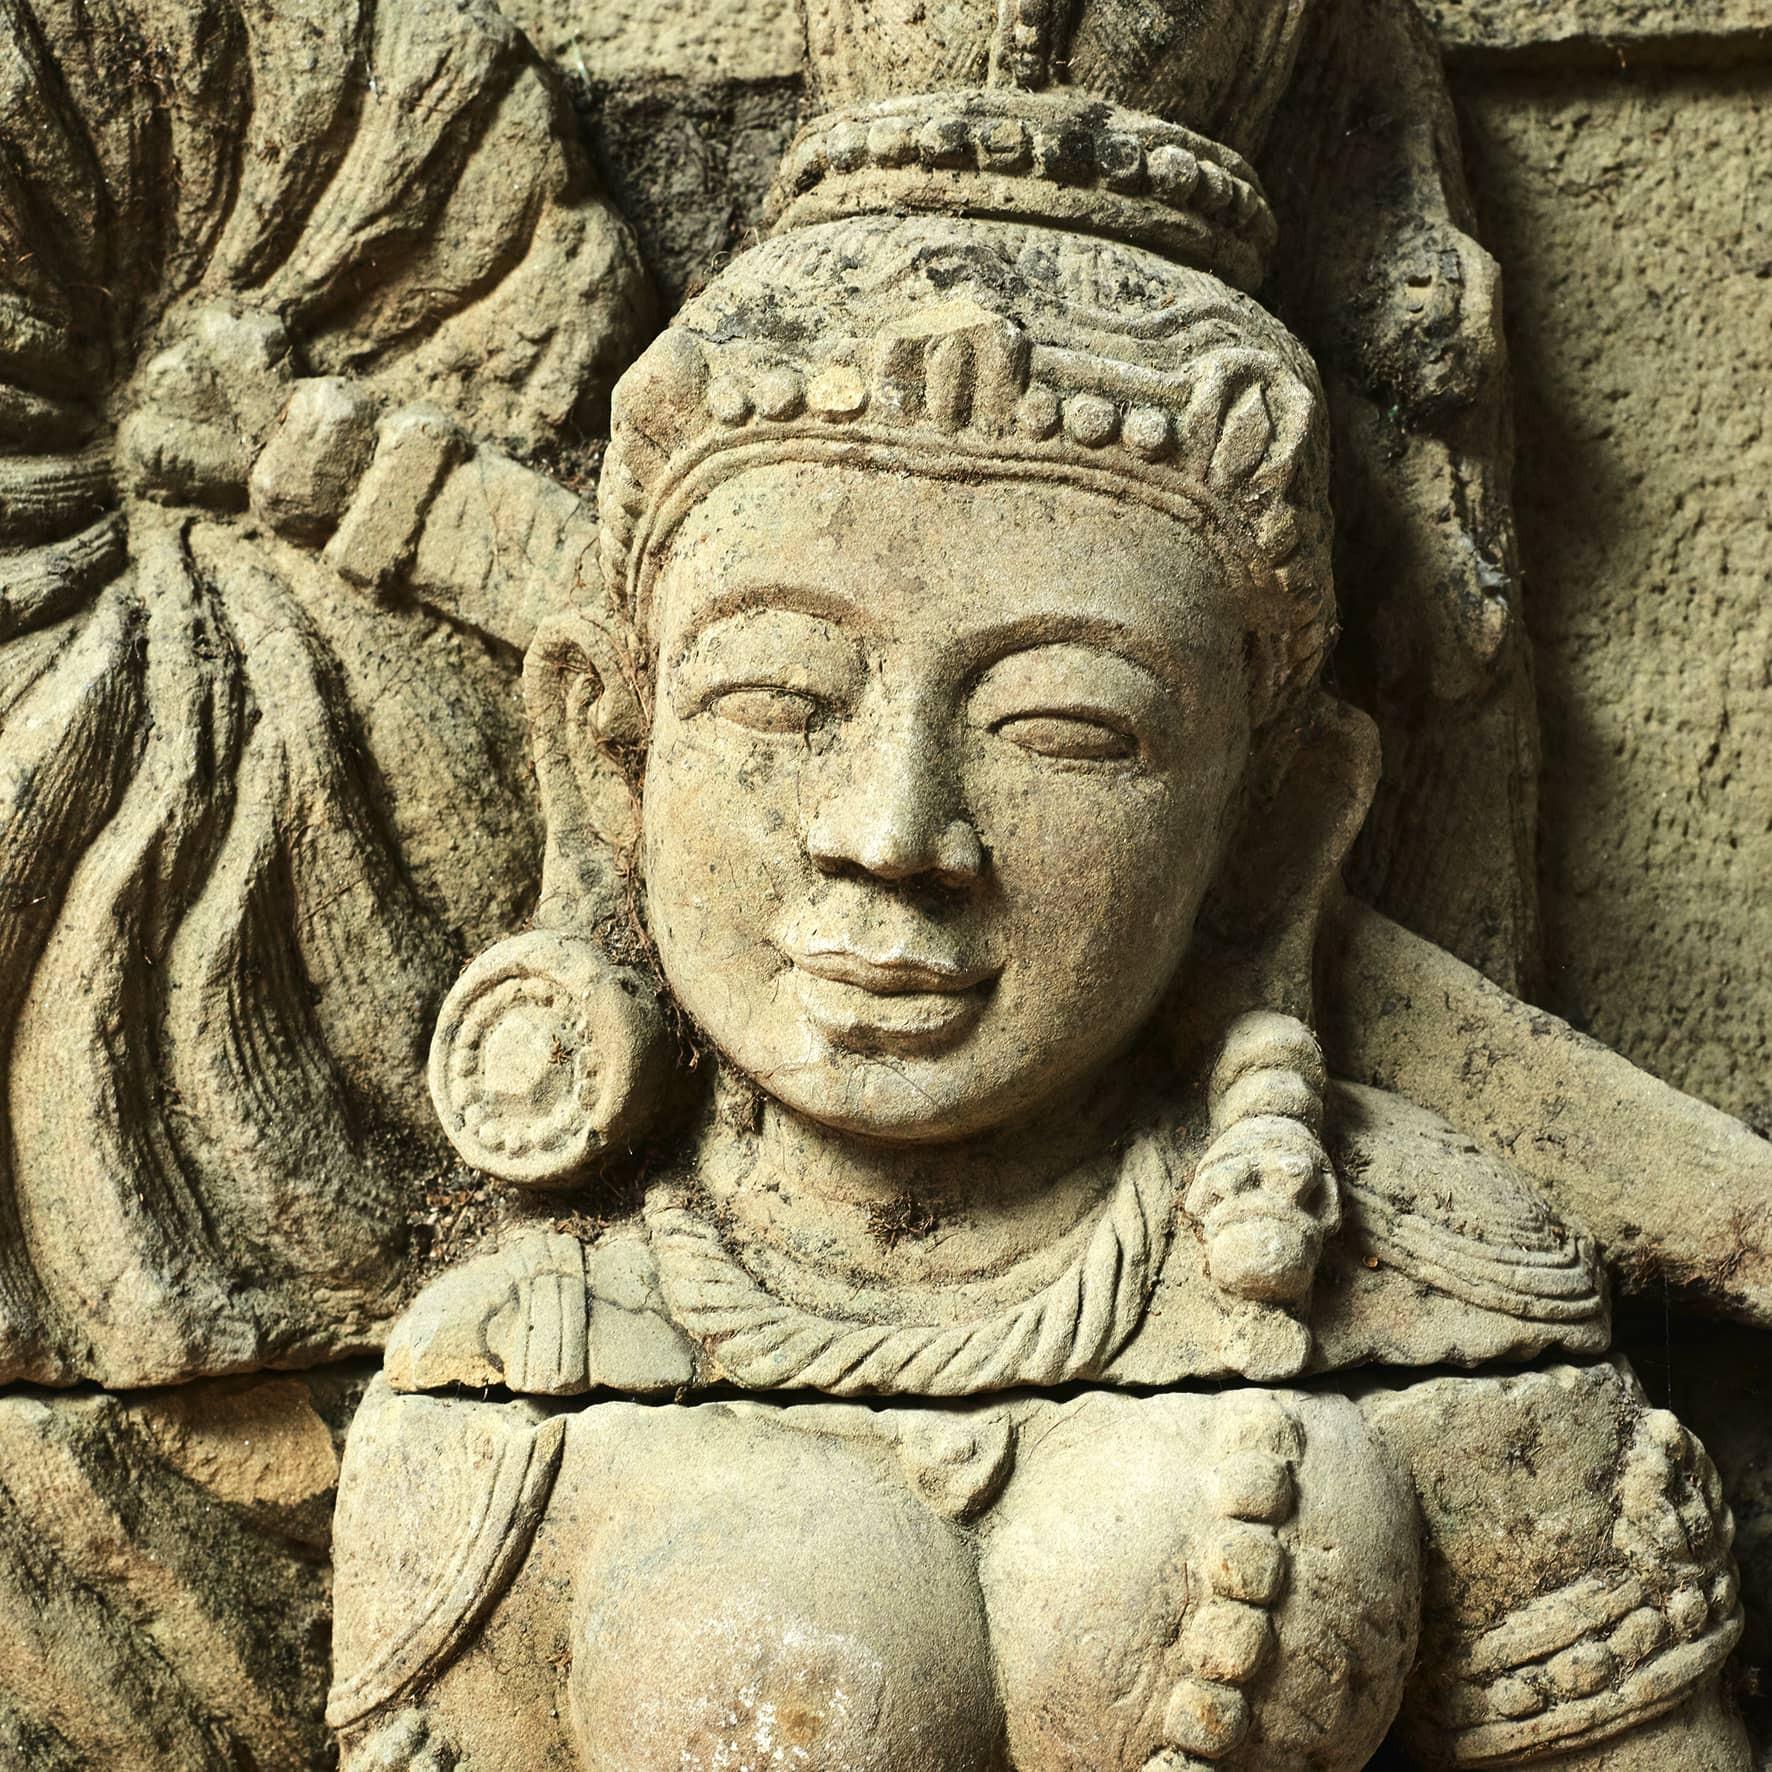 Seltene 500-600 Jahre alte Sandsteinreliefstatue von Saraswati, der Göttin der Sprache, der Künste, der Musik, des Wissens und der Geisteskraft.
Original in drei Teilen auf hellem Sandsteinsockel montiert.
Stammt aus Arakan, einer geografischen